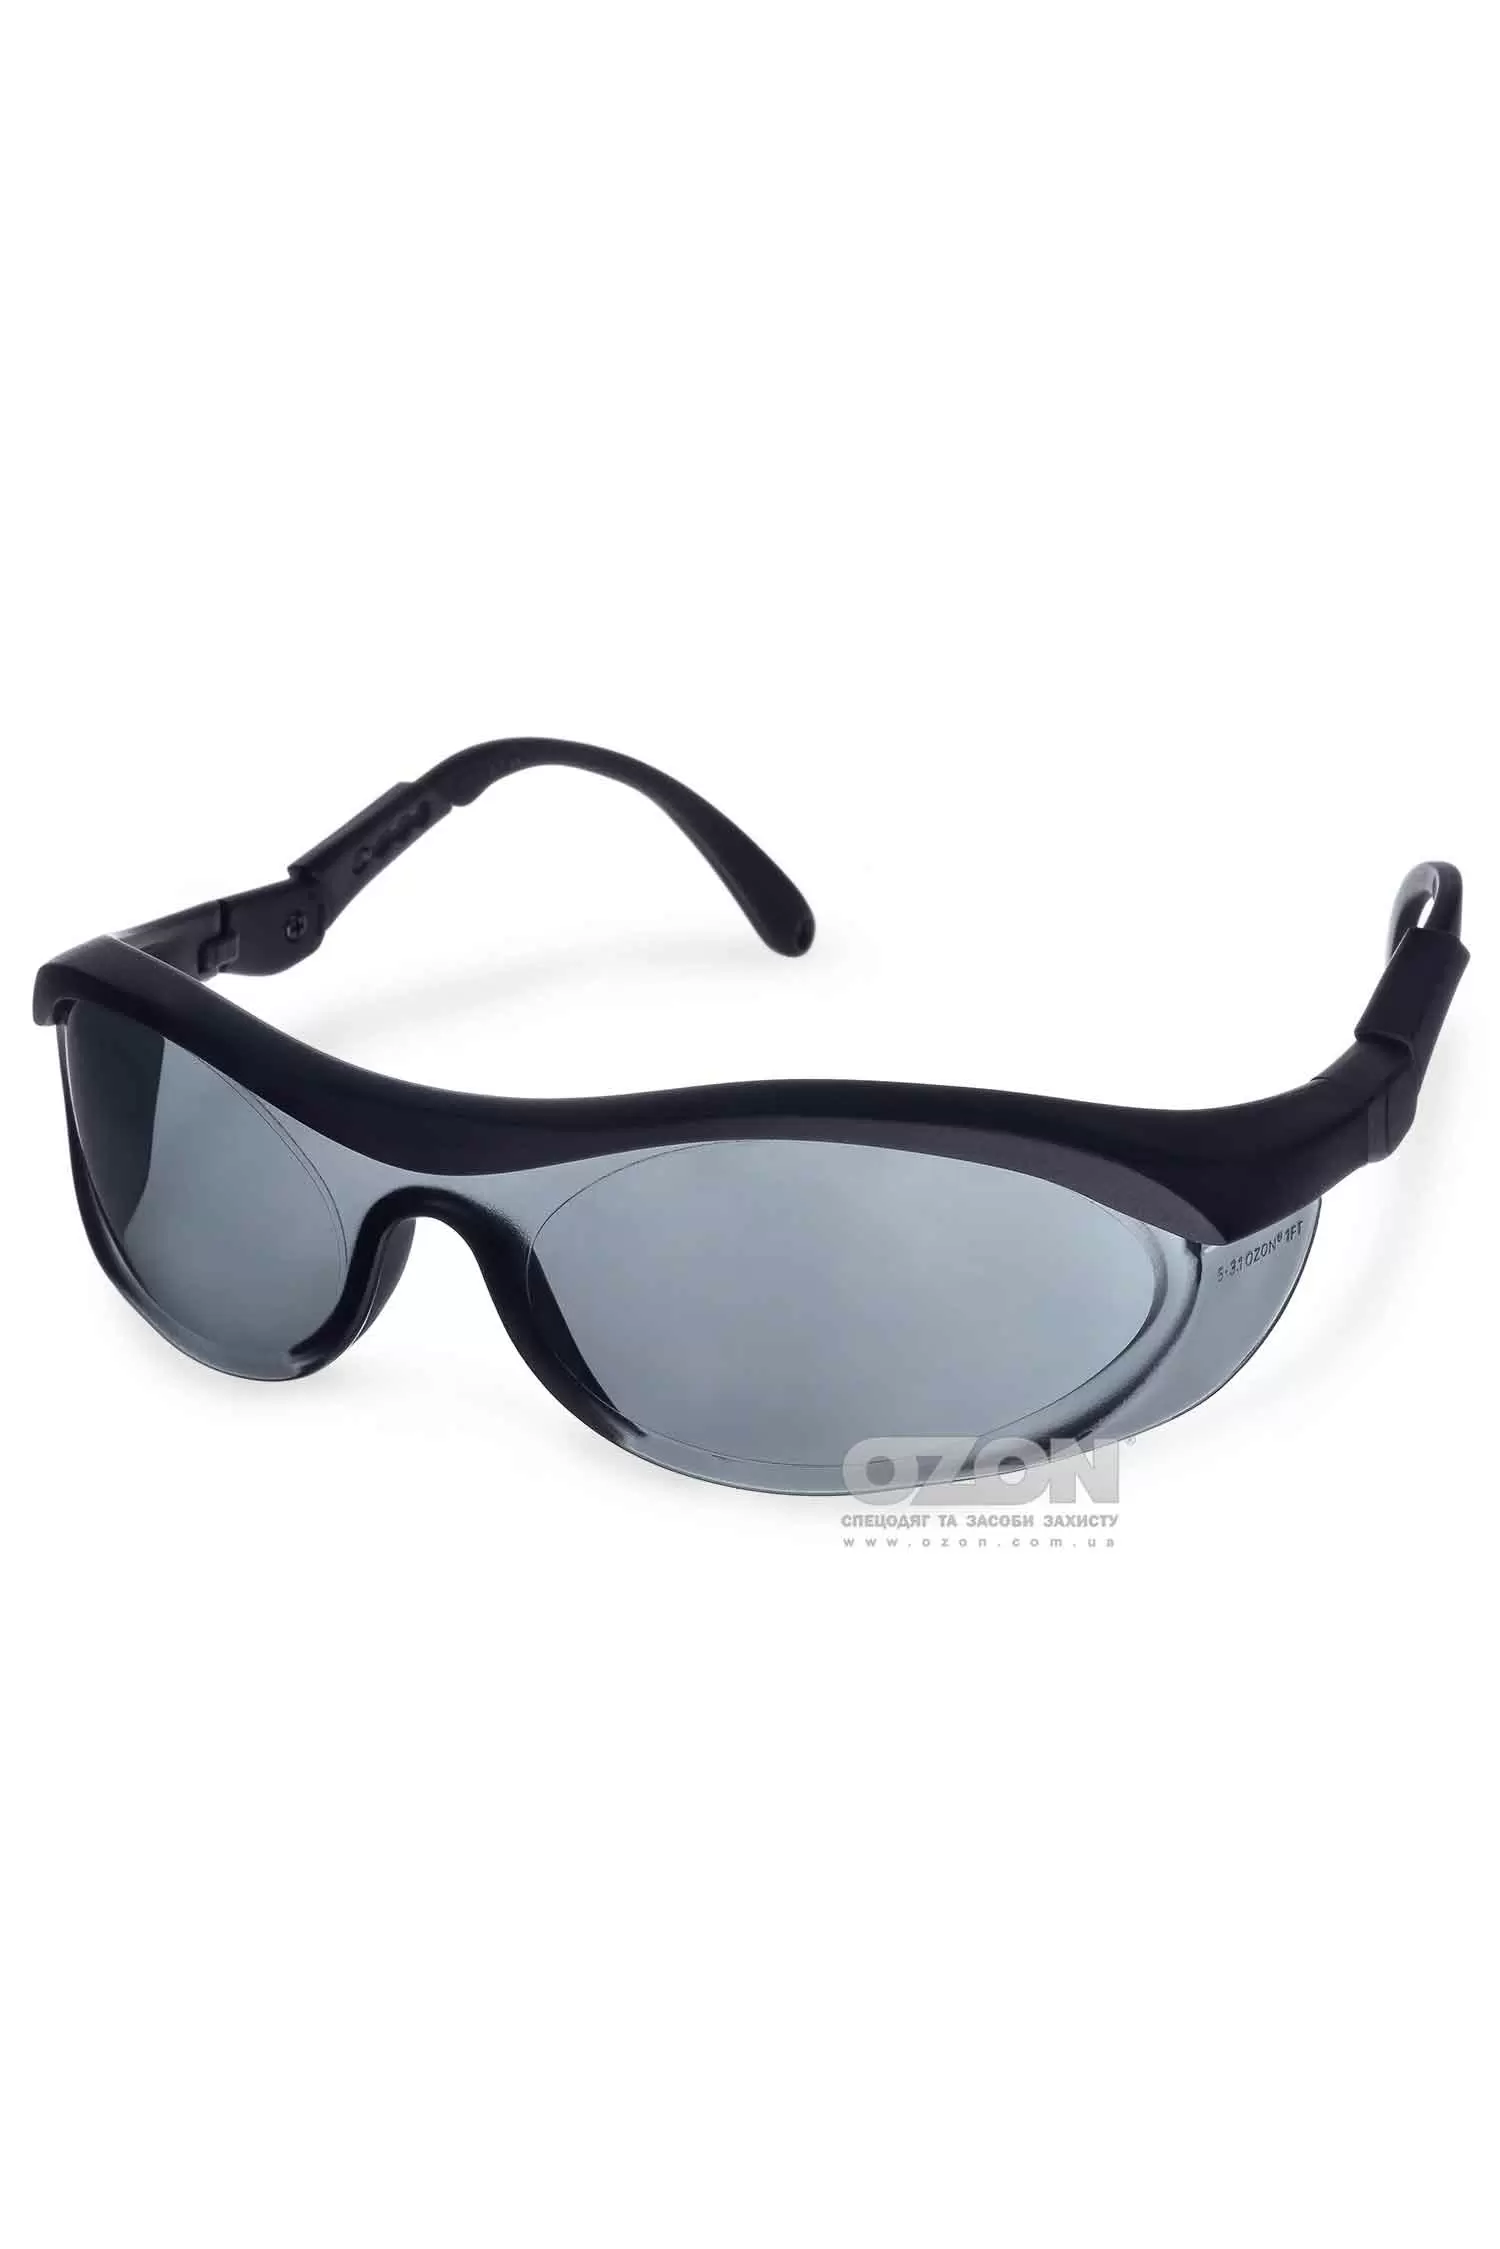 Защитные очки OZON™ 7-035, затемненные - Фото 1